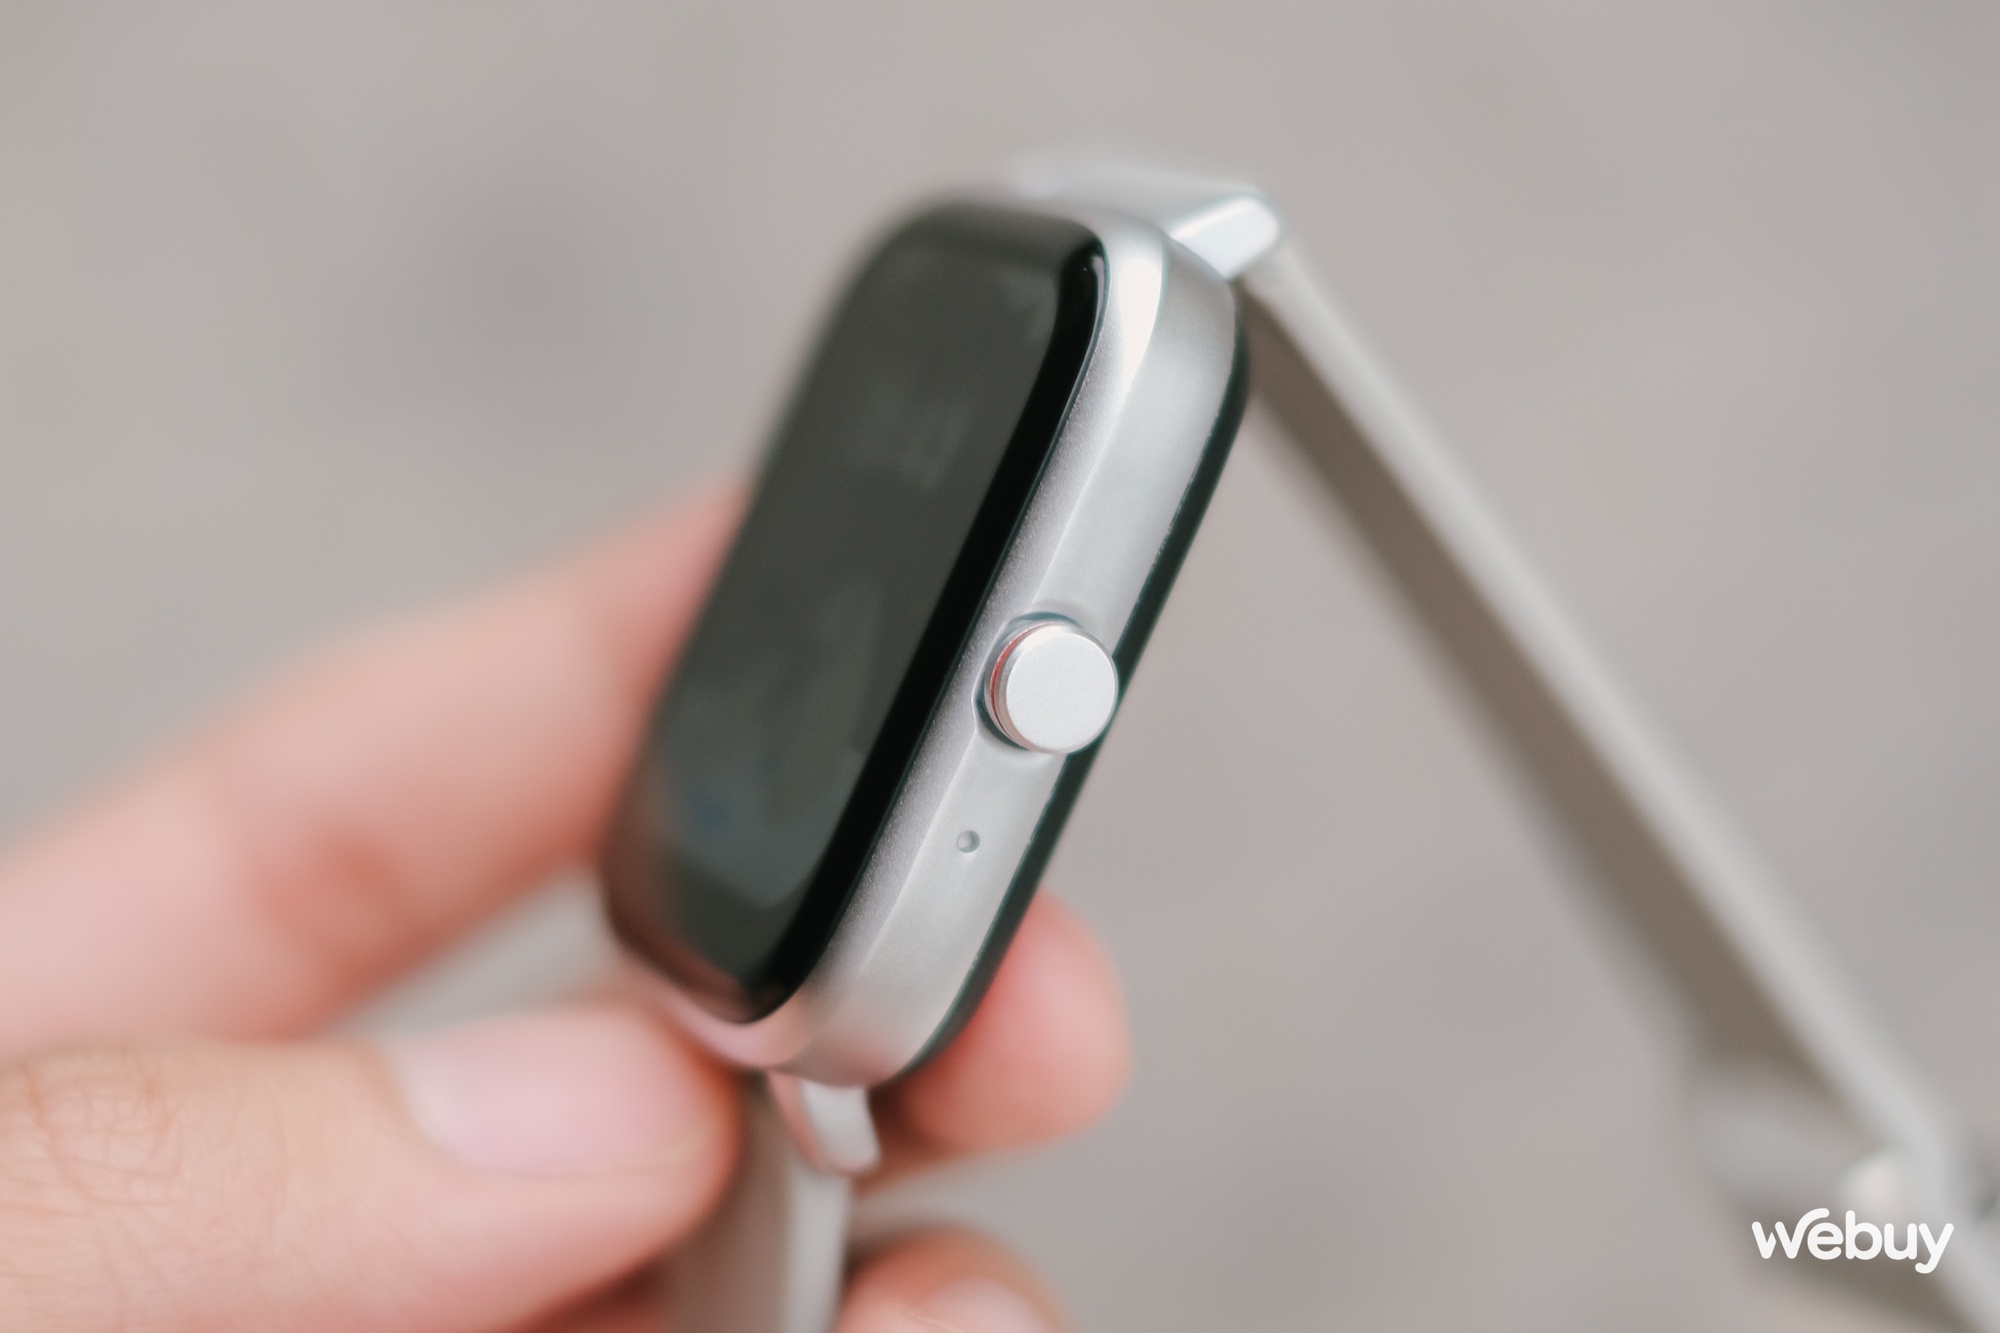 Smartwatch chính hãng giá 490.000 đồng: Thiết kế giống Apple Watch, khung viền nhôm, có loa/mic thoại, pin 7 ngày - Ảnh 6.